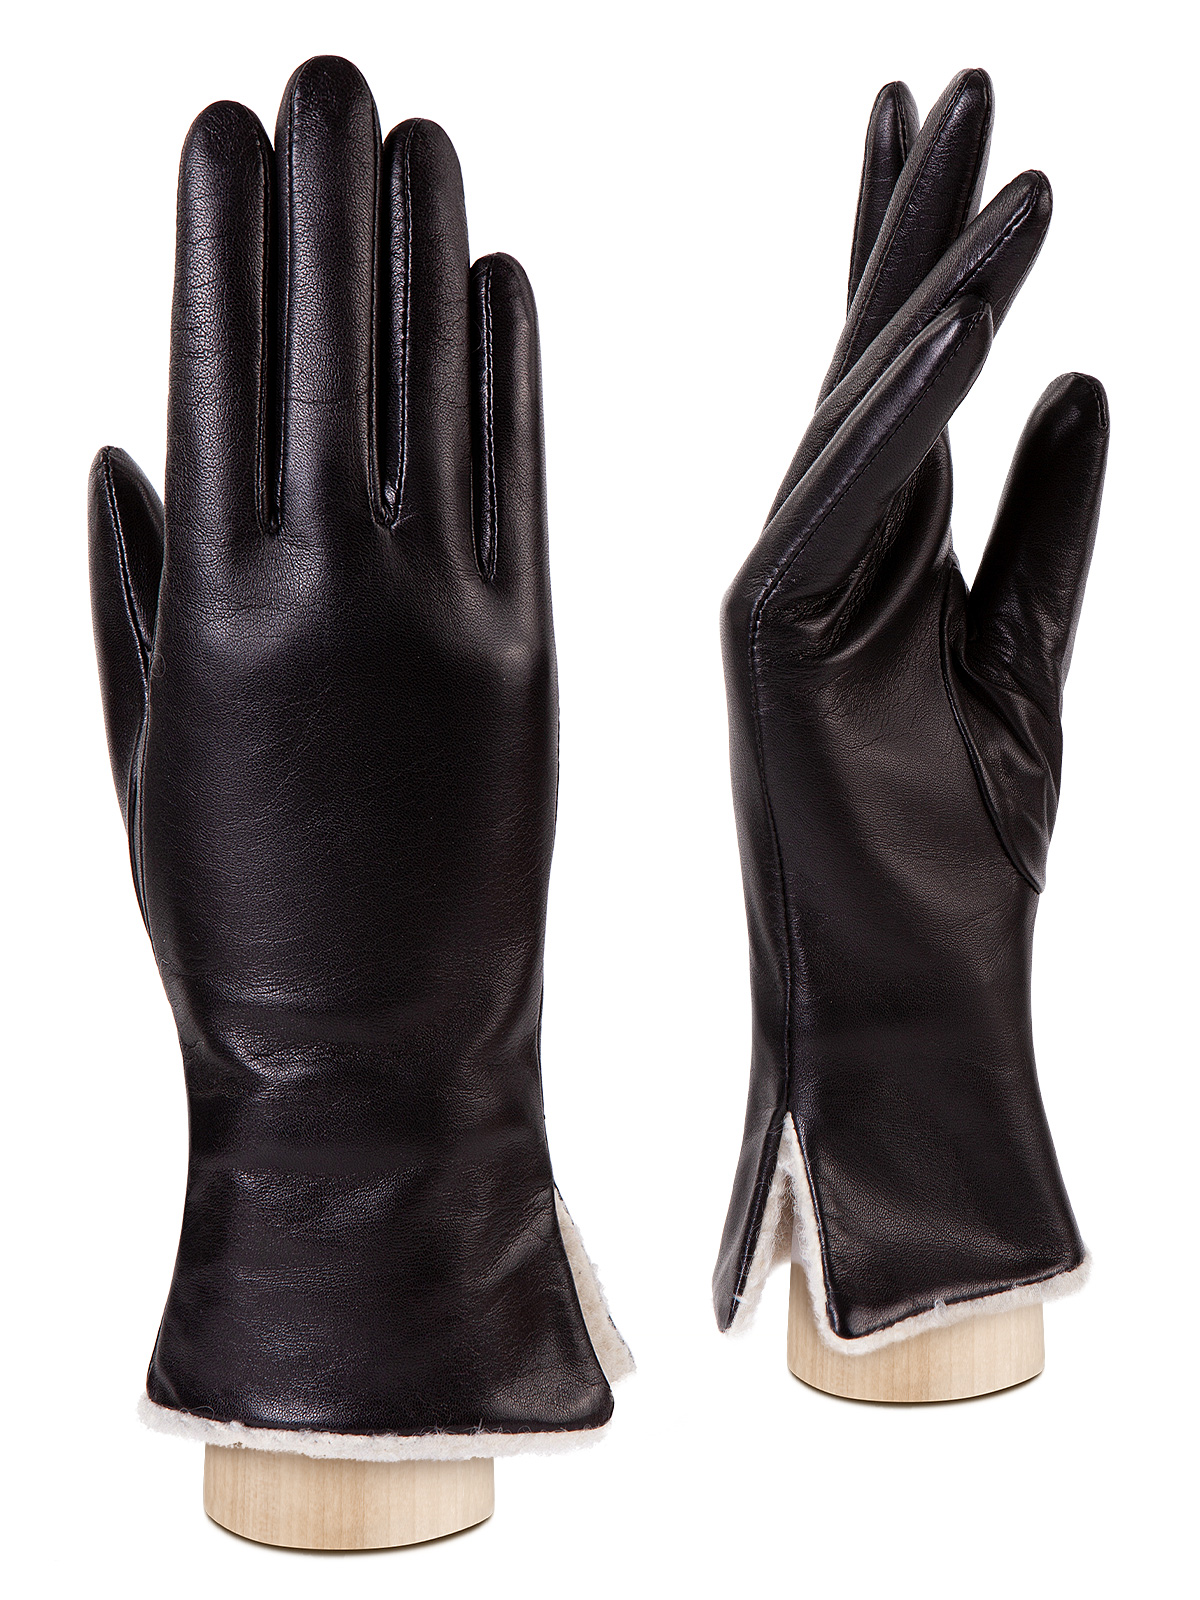 Перчатки женские Eleganzza IS352 черные р. M